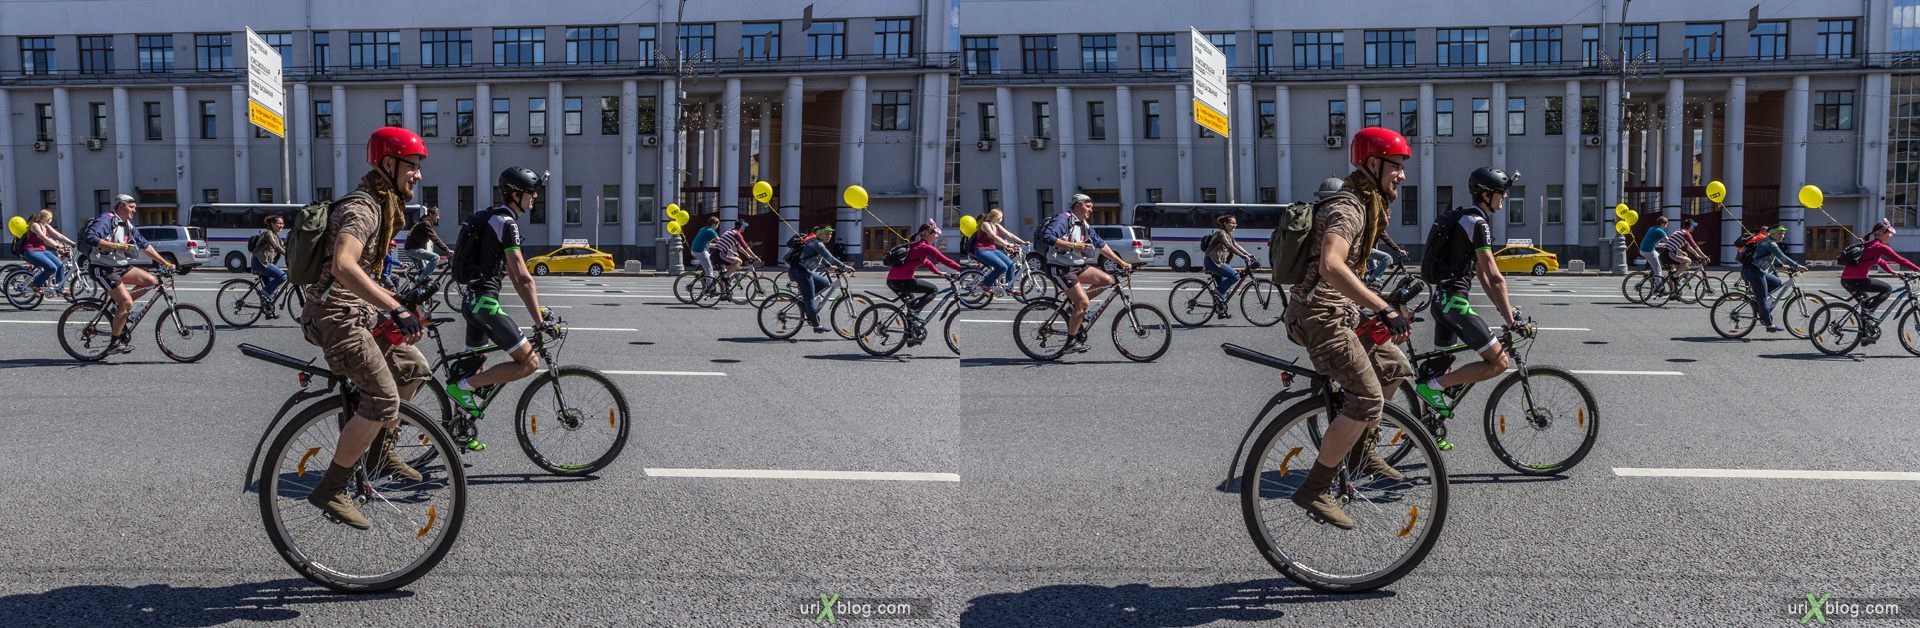 2014, велопарад, Москва, Россия, Садовое кольцо, Красные ворота, лето, июнь, велосипеды, 3D, перекрёстная стереопара, стерео, стереопара